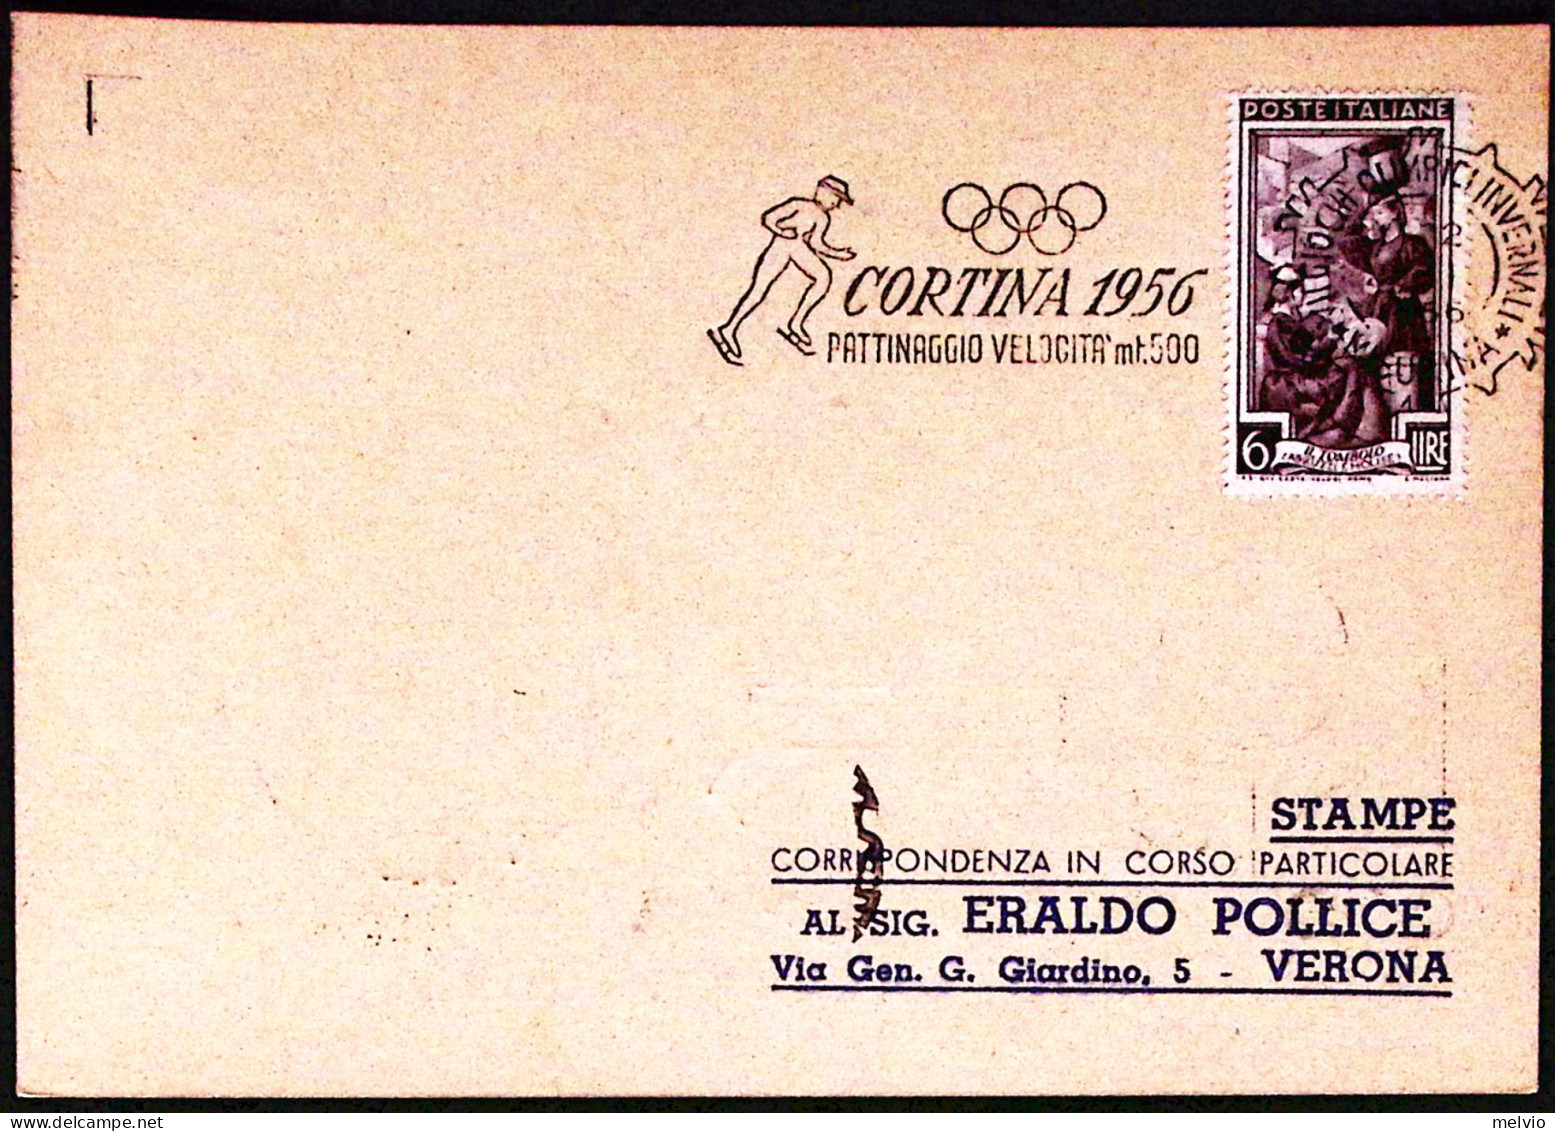 1956-MISURINA PATTINAGGIO VELOCITA' Mt 500 Annullo Targhetta (28.1) Su Cartolina - Manifestazioni